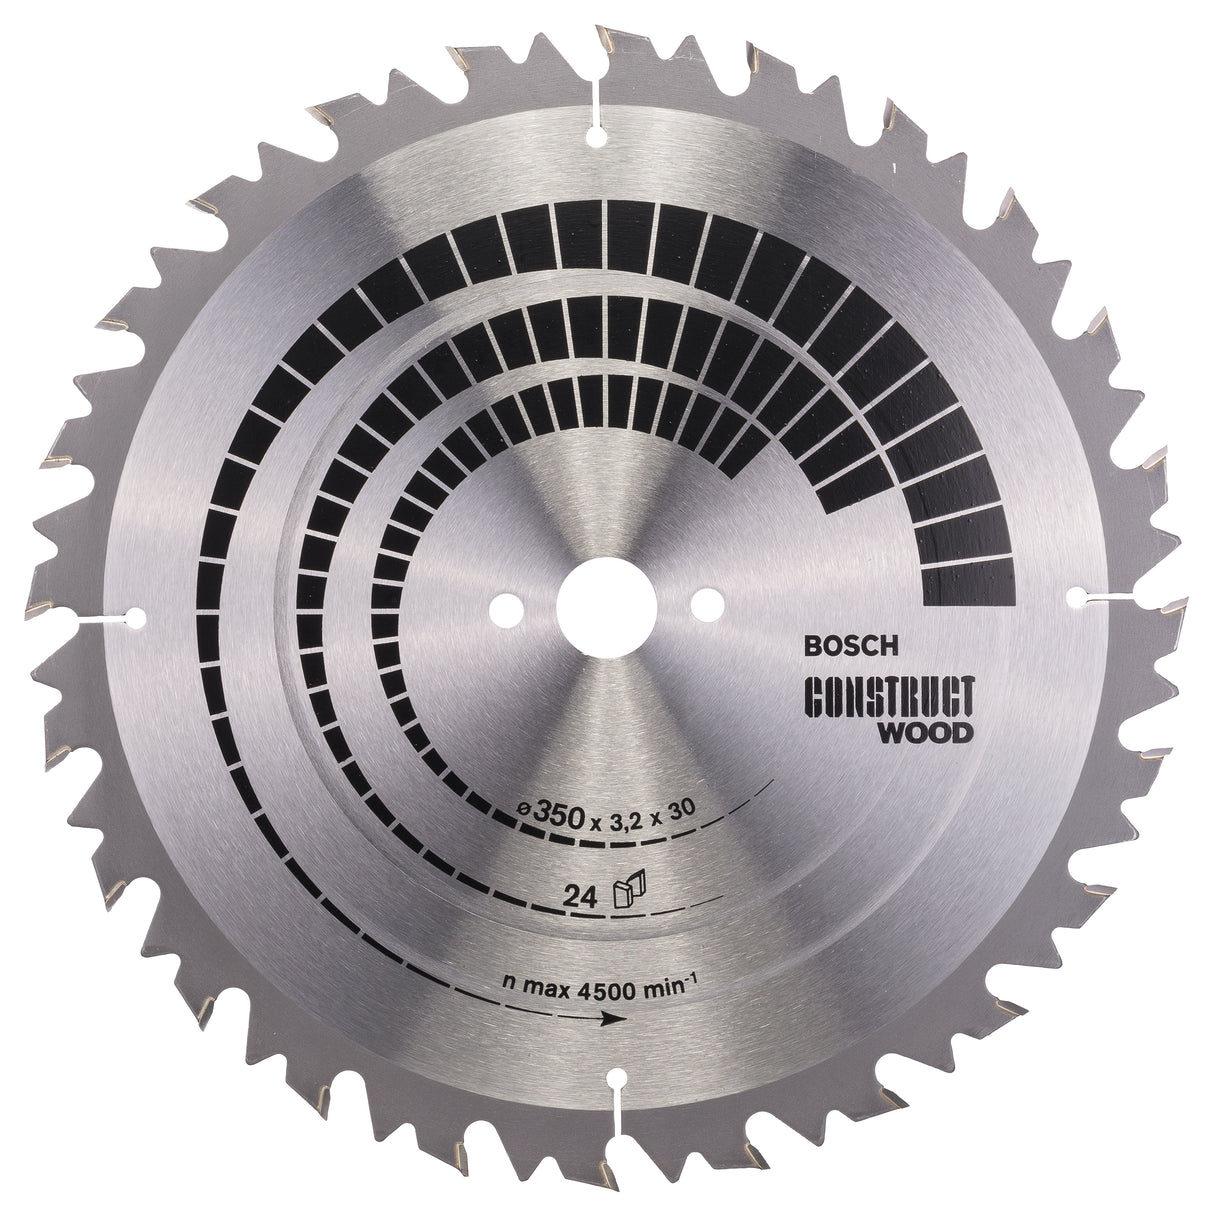 Bosch Professional Construct Wood Circular Saw Blade - 350mm x 30mm x 3.2mm, 24 Teeth